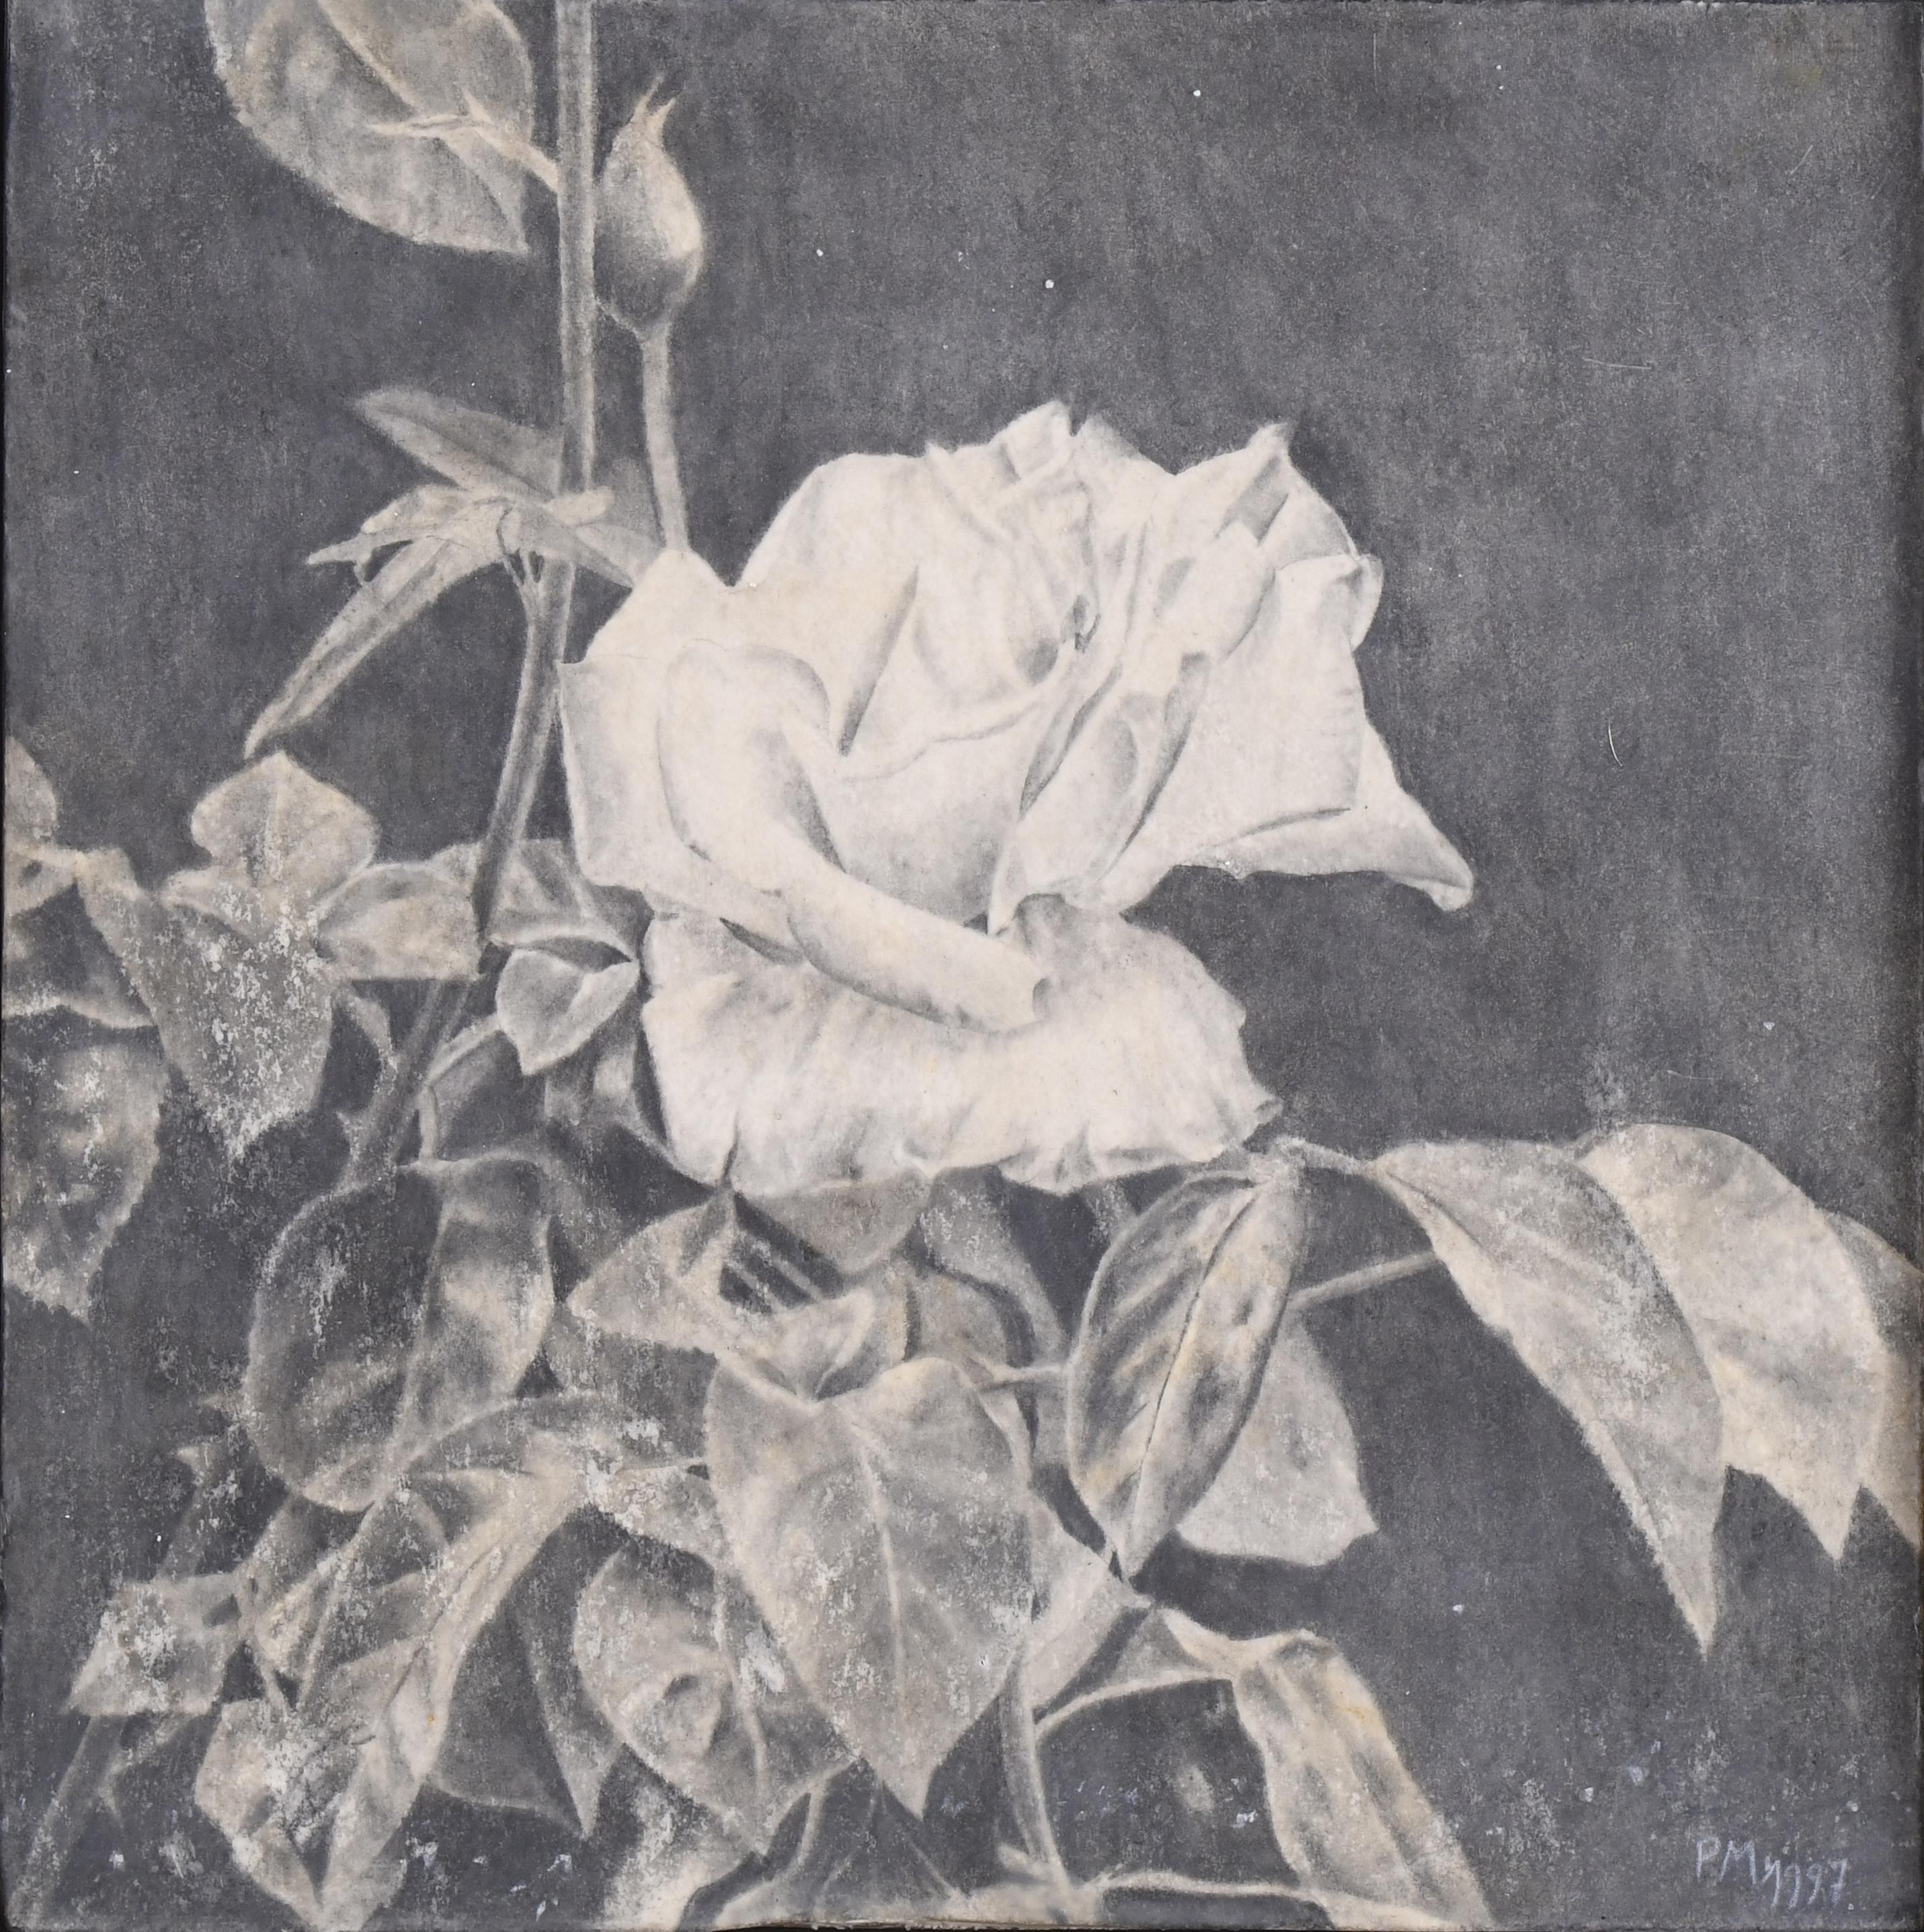 PEDRO MORENO MEYERHOF (1954). "WHITE ROSE", 1997.